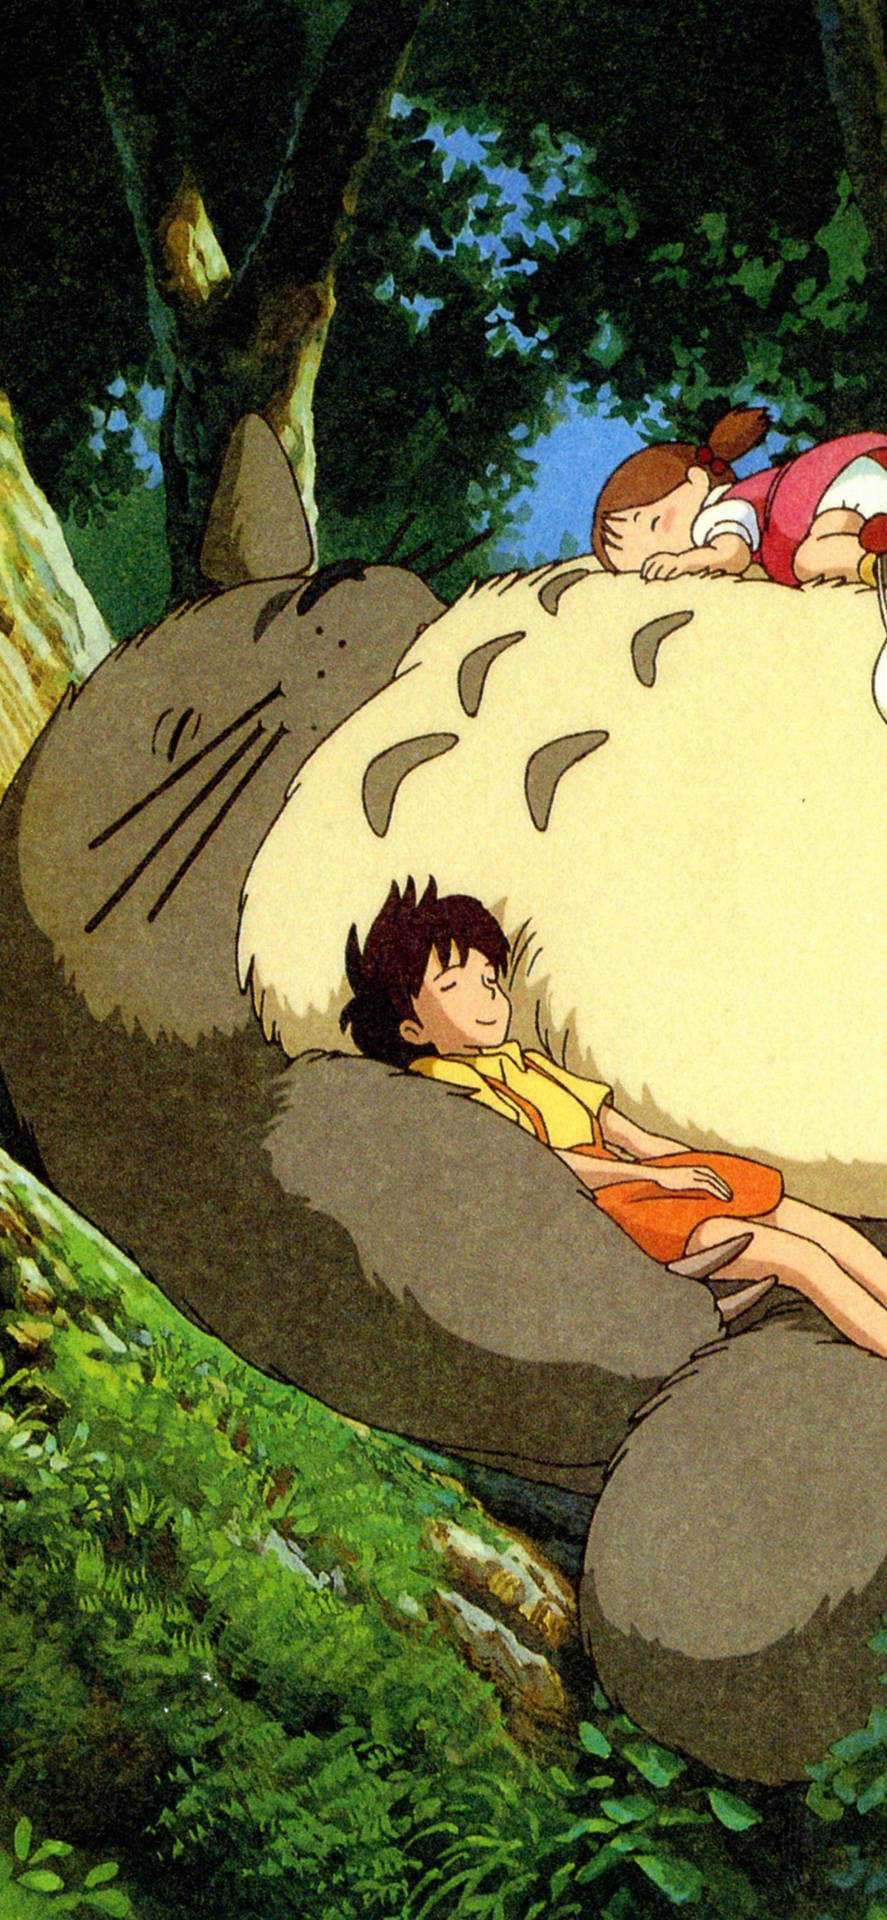 Rufensie Die Geister Von Studio Ghibli Mit Diesem Iphone Herbei! Wallpaper